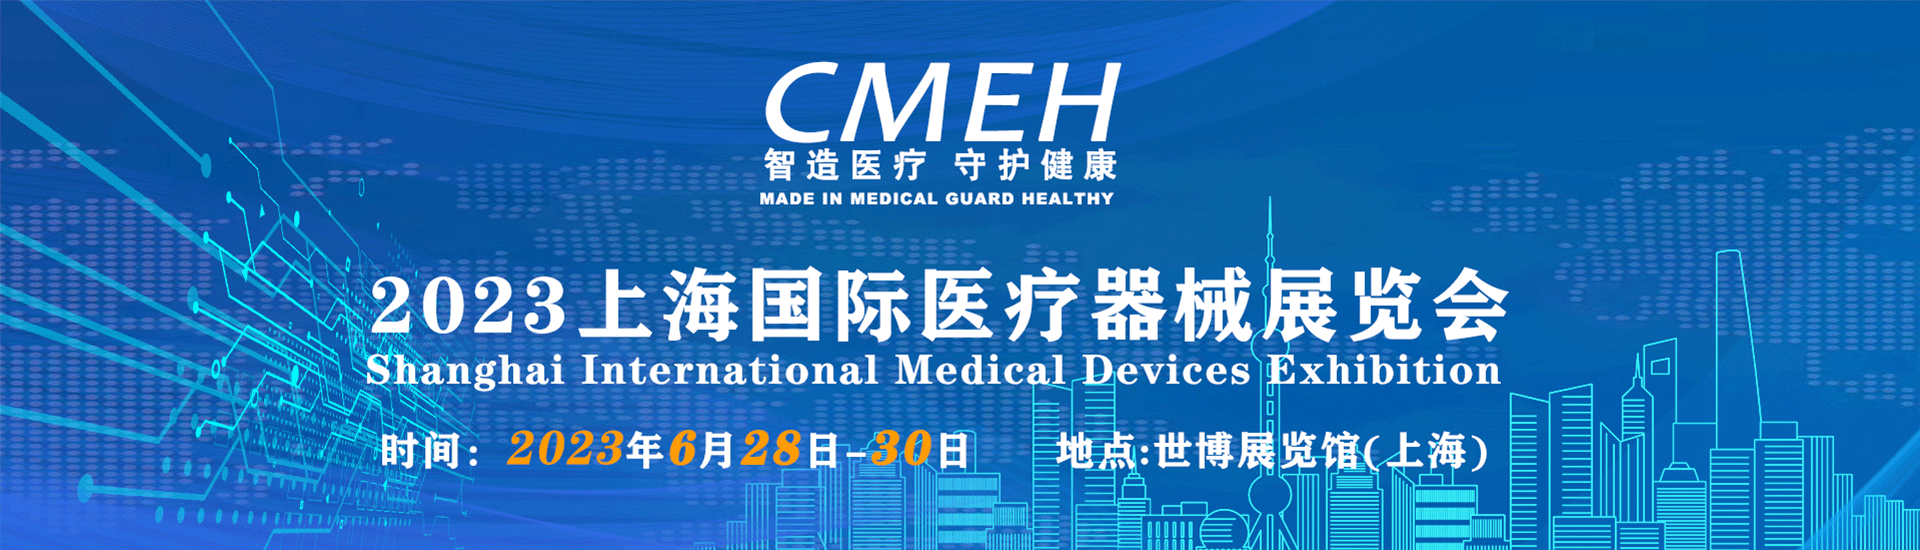 中国医疗器械展览会-中国国际医疗器械博览会-医疗展会一览表